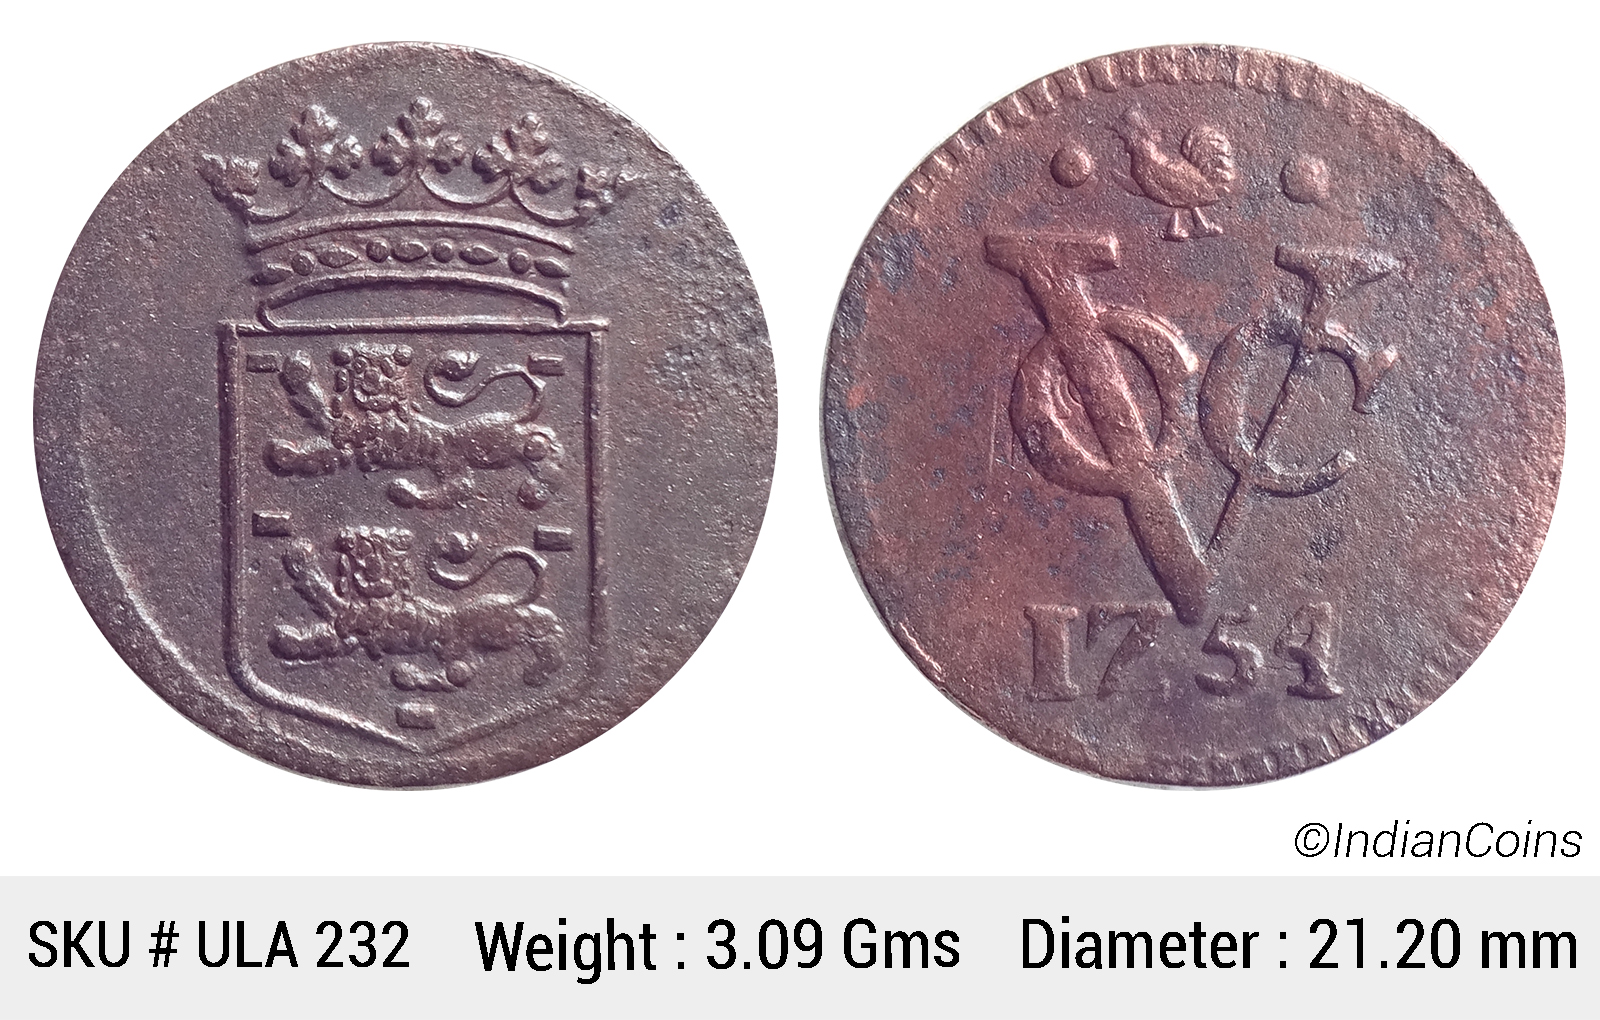 1726–1794 Dutch Copper Duit VOC